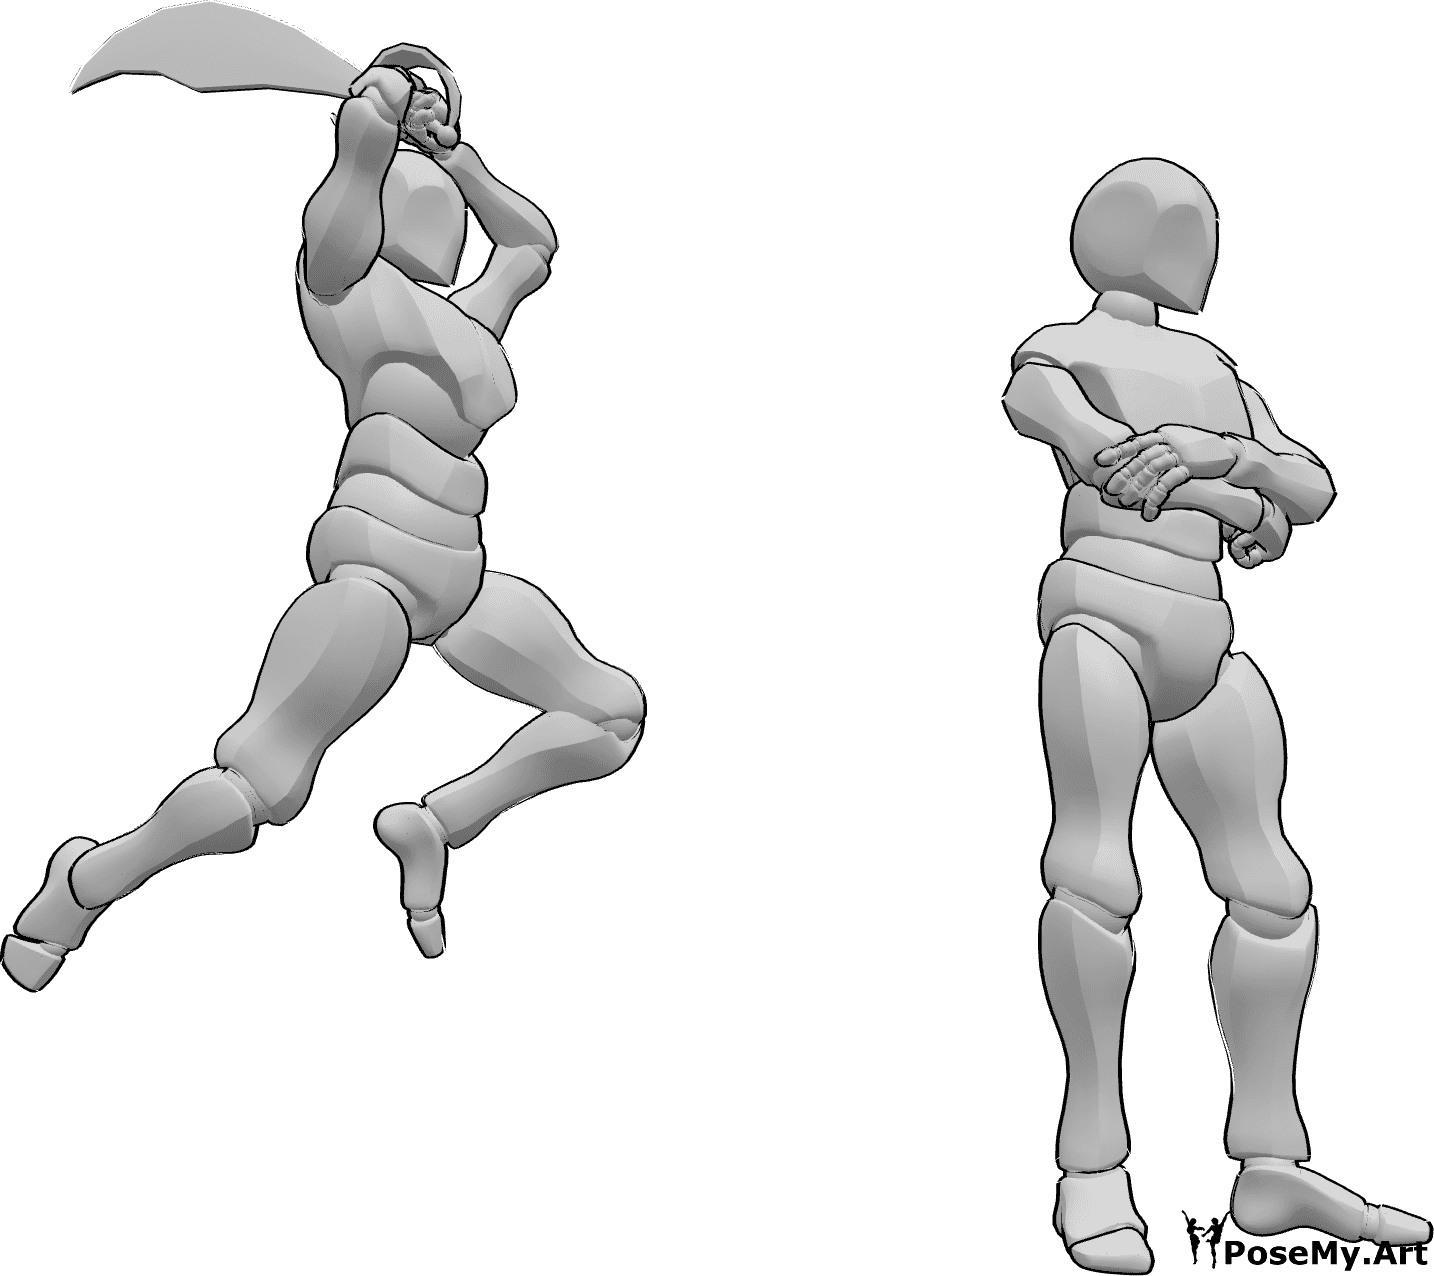 Referencia de poses- Postura de ataque con espada - El macho ataca al otro macho por detrás, salta para golpear con su espada